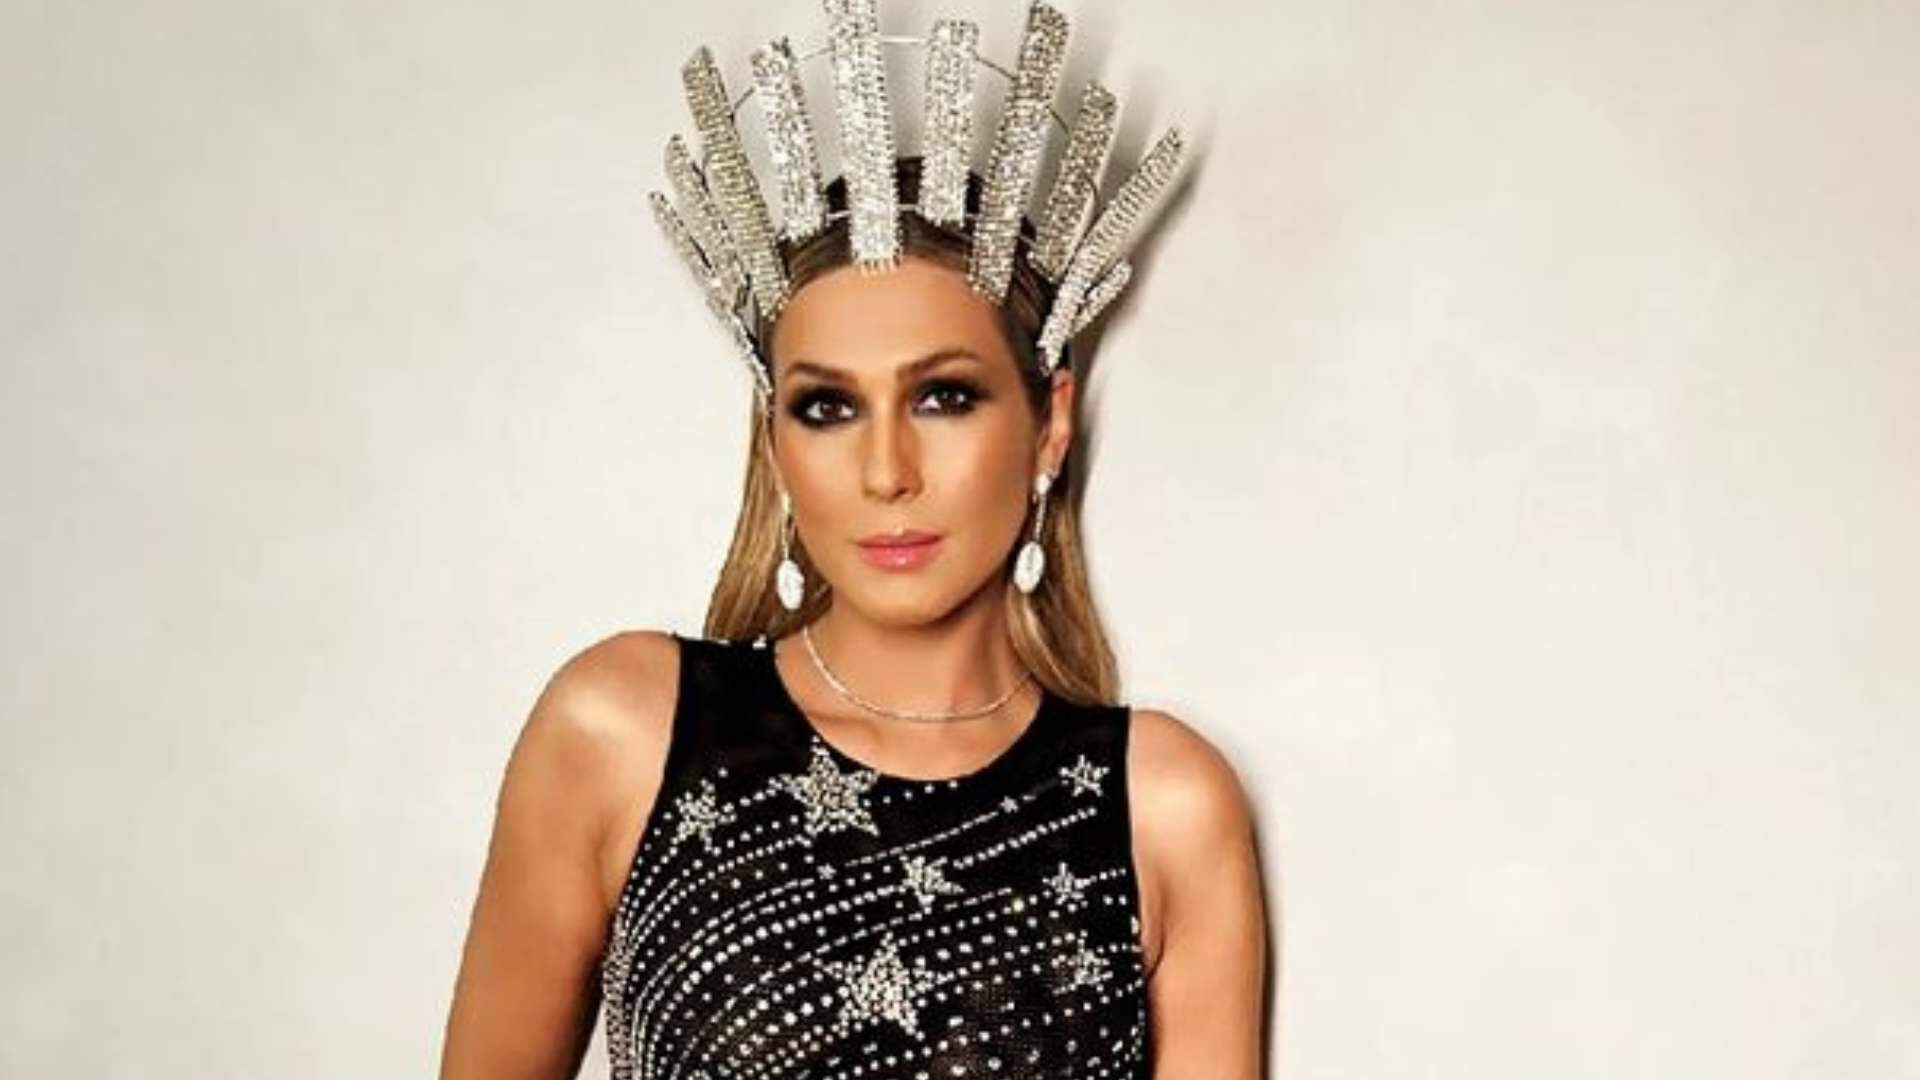 Lívia Andrade deixa vestido aberto demais e zoom revela tabaca bronzeada: “Carnaval começou”